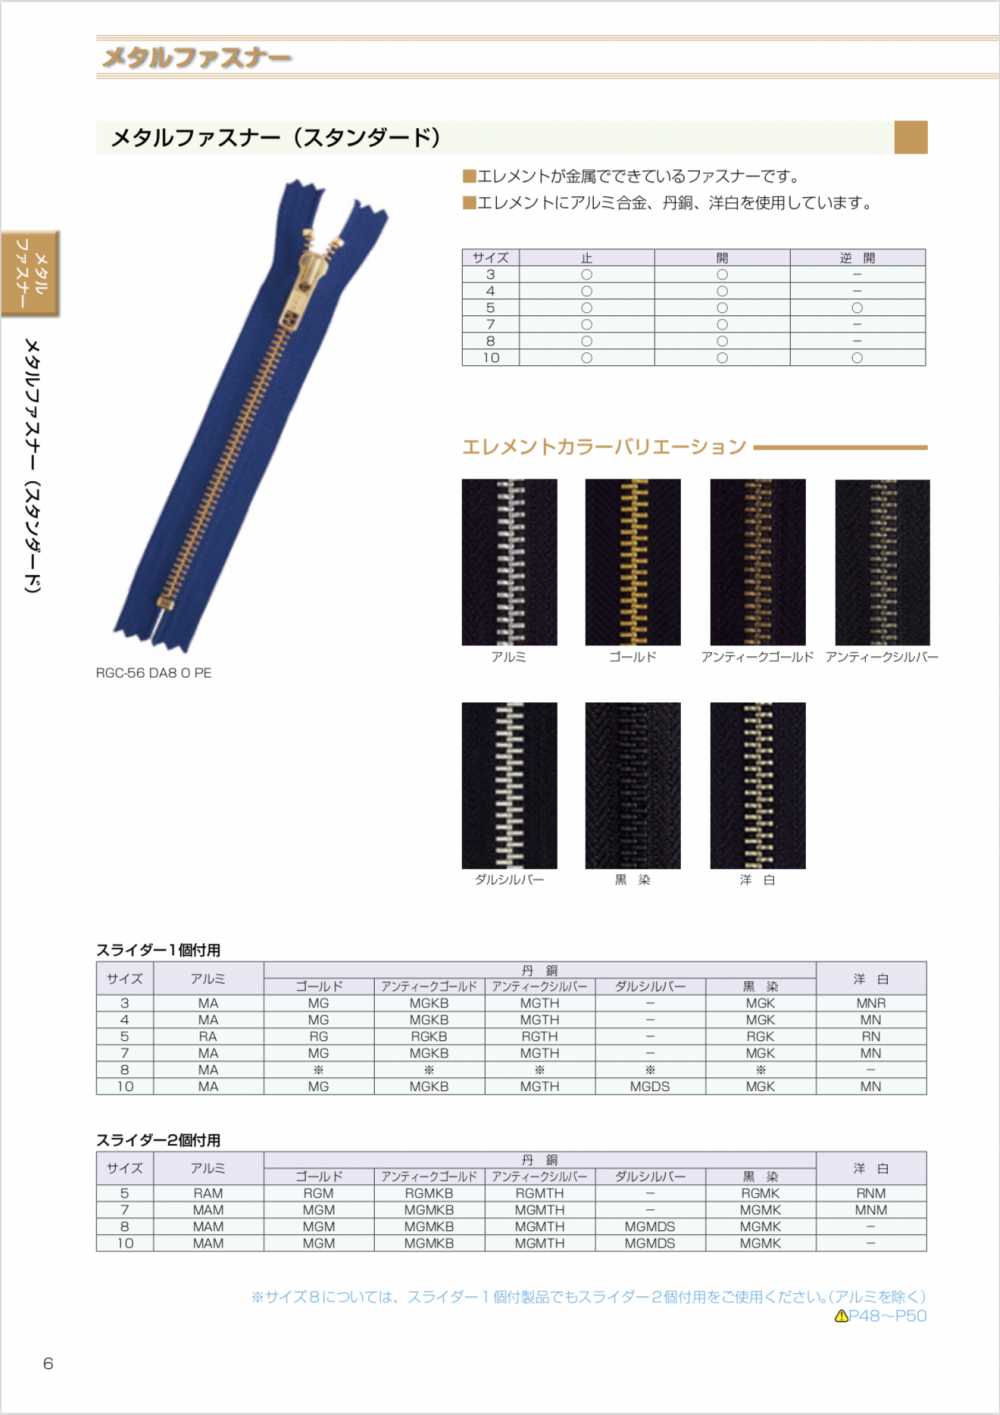 10MGMKMR Metal Zipper /size 10/ Two Way Separator YKK